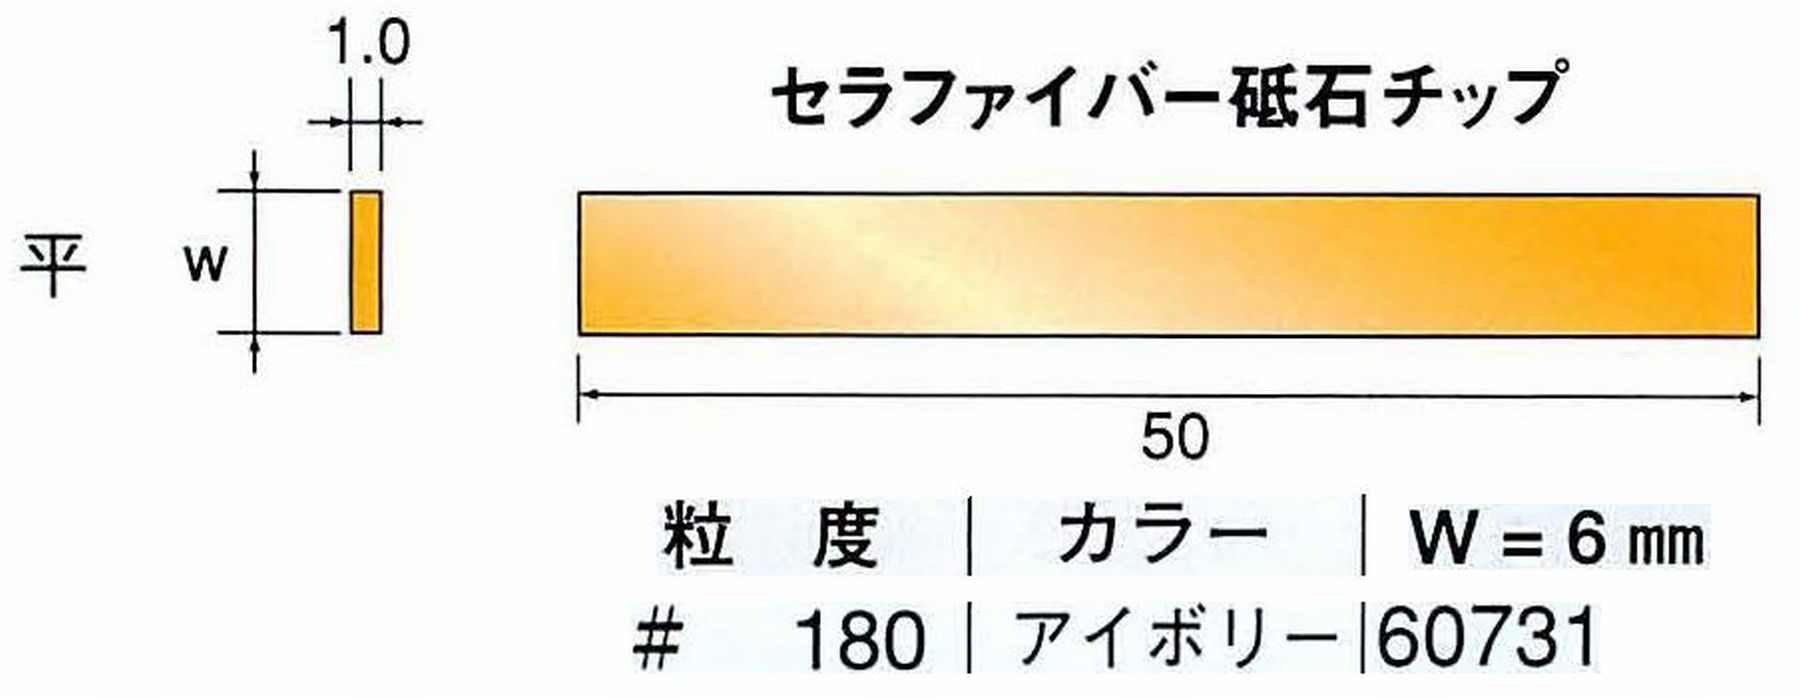 ナカニシ/NAKANISHI 超音波研磨装置 シーナスneo/シーナス専用工具 セラファイバー砥石チップ 平 60731